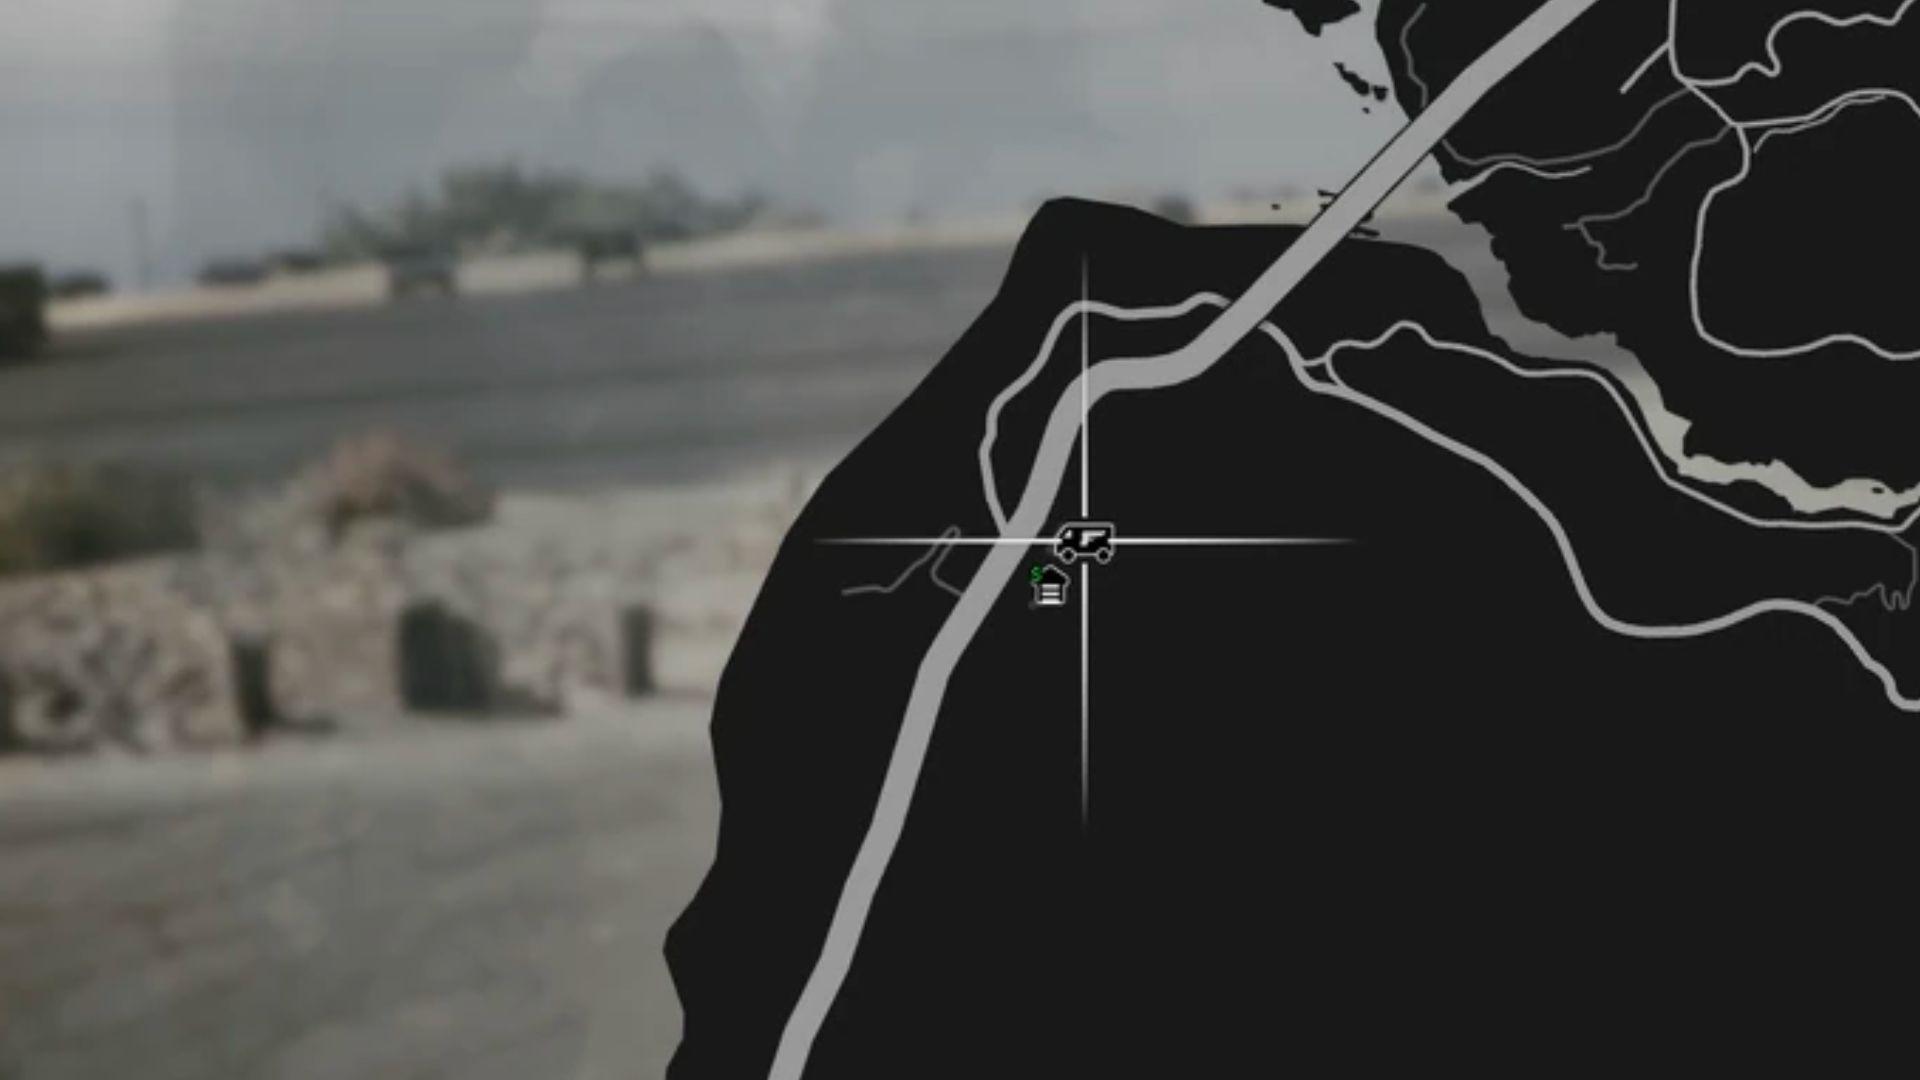 GTA Online map with gun van location behind Hookies.